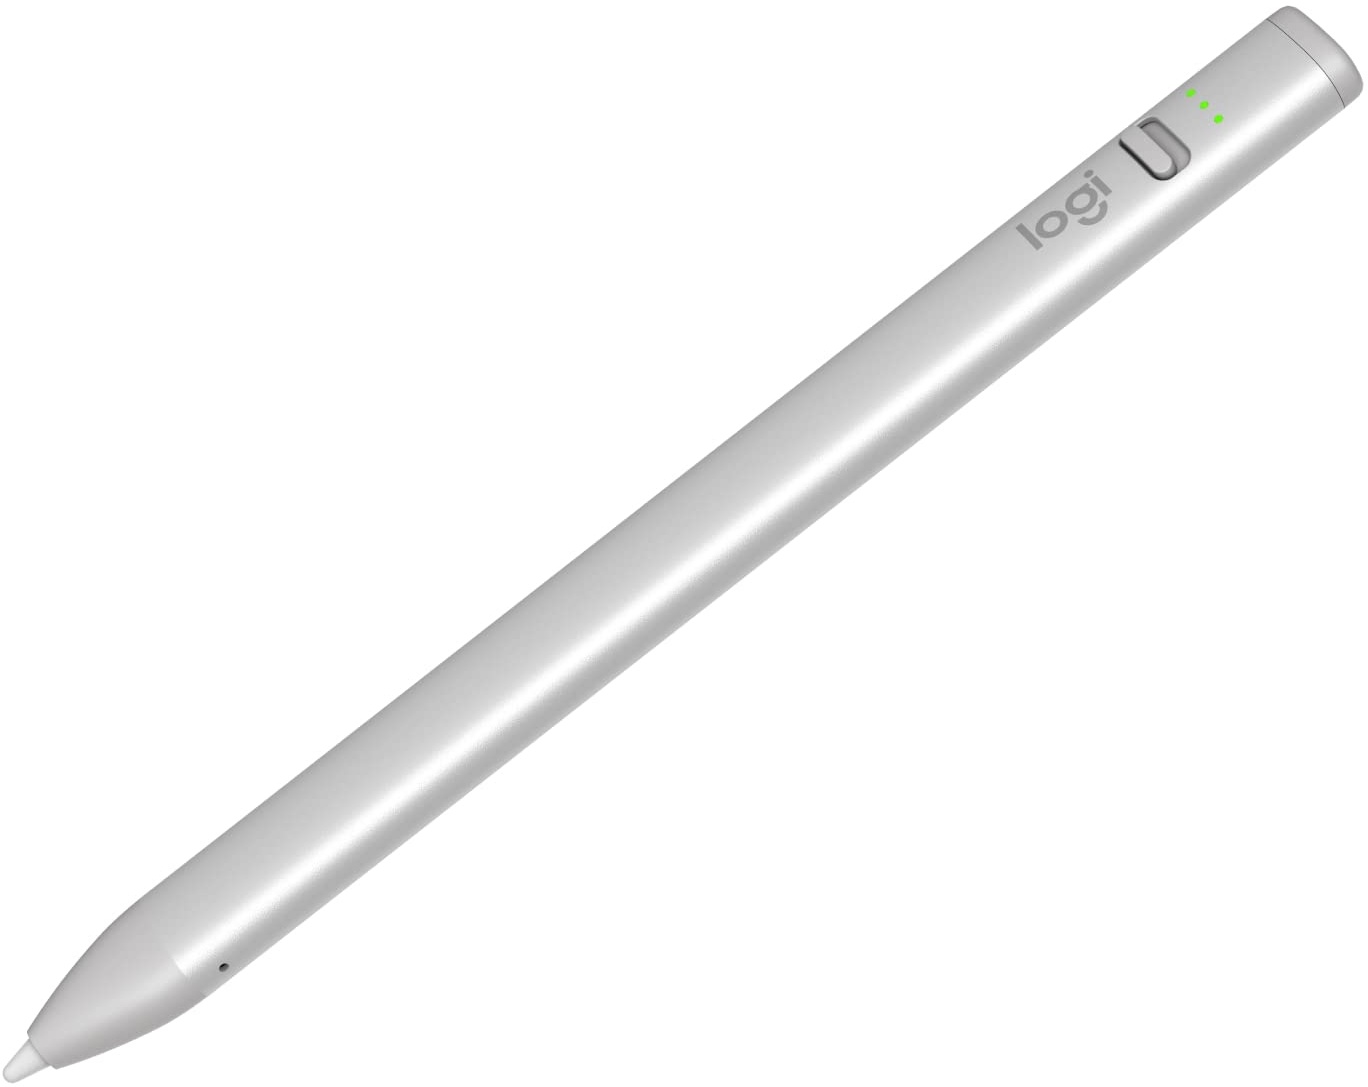 Logitech Crayon - Digitaler Zeichenstift für iPad (iPad-Modelle mit USB-C-Anschlüssen) mit Apple Pencil Technologie, pixelgenauer ohne Verzögerung, Smart-Tip mit Schnellladung über USB-C - Silber